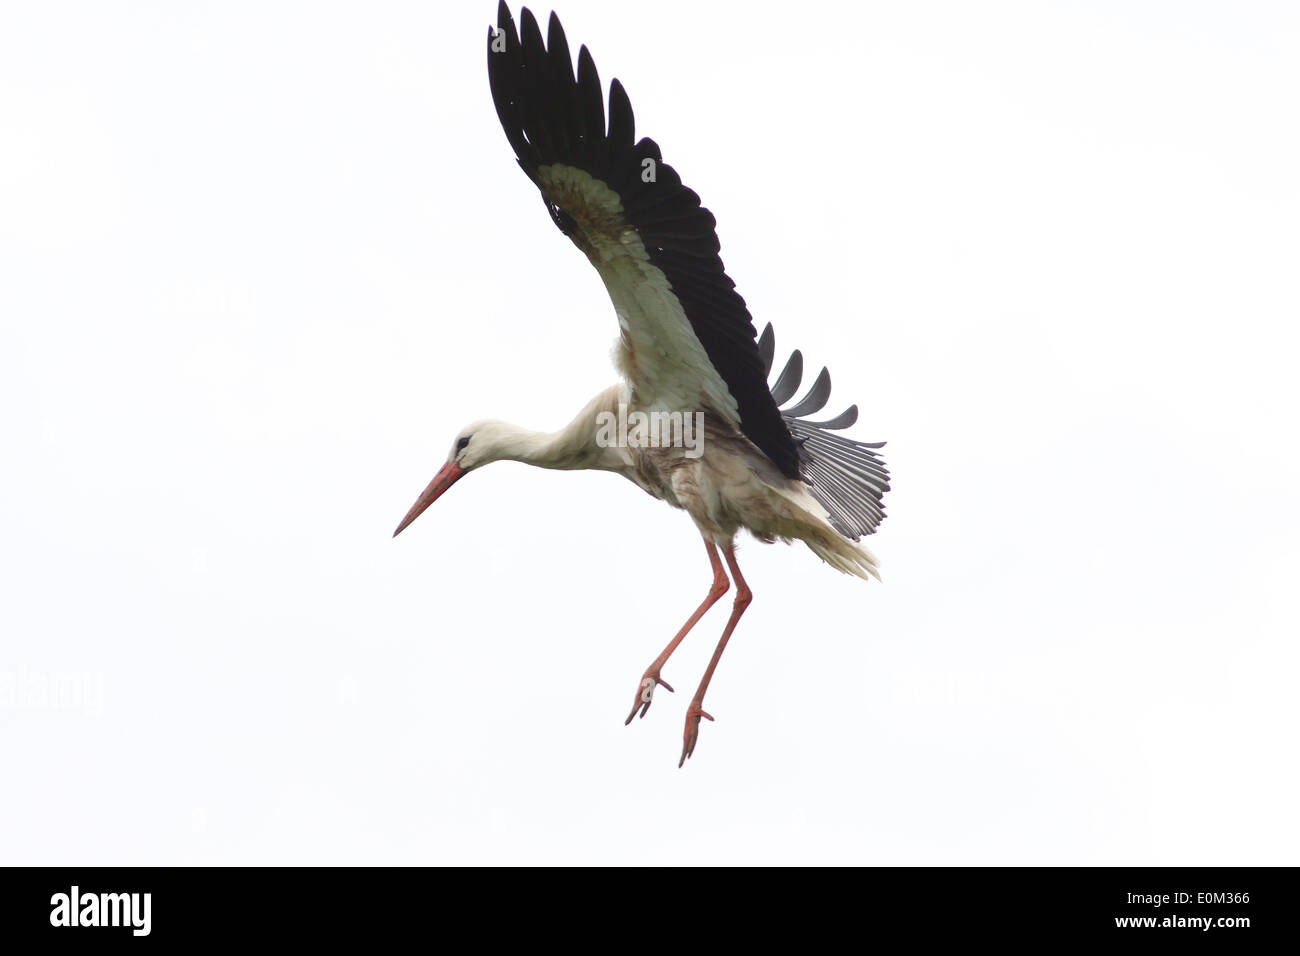 European White Stork (Ciconia ciconia) in flight Stock Photo